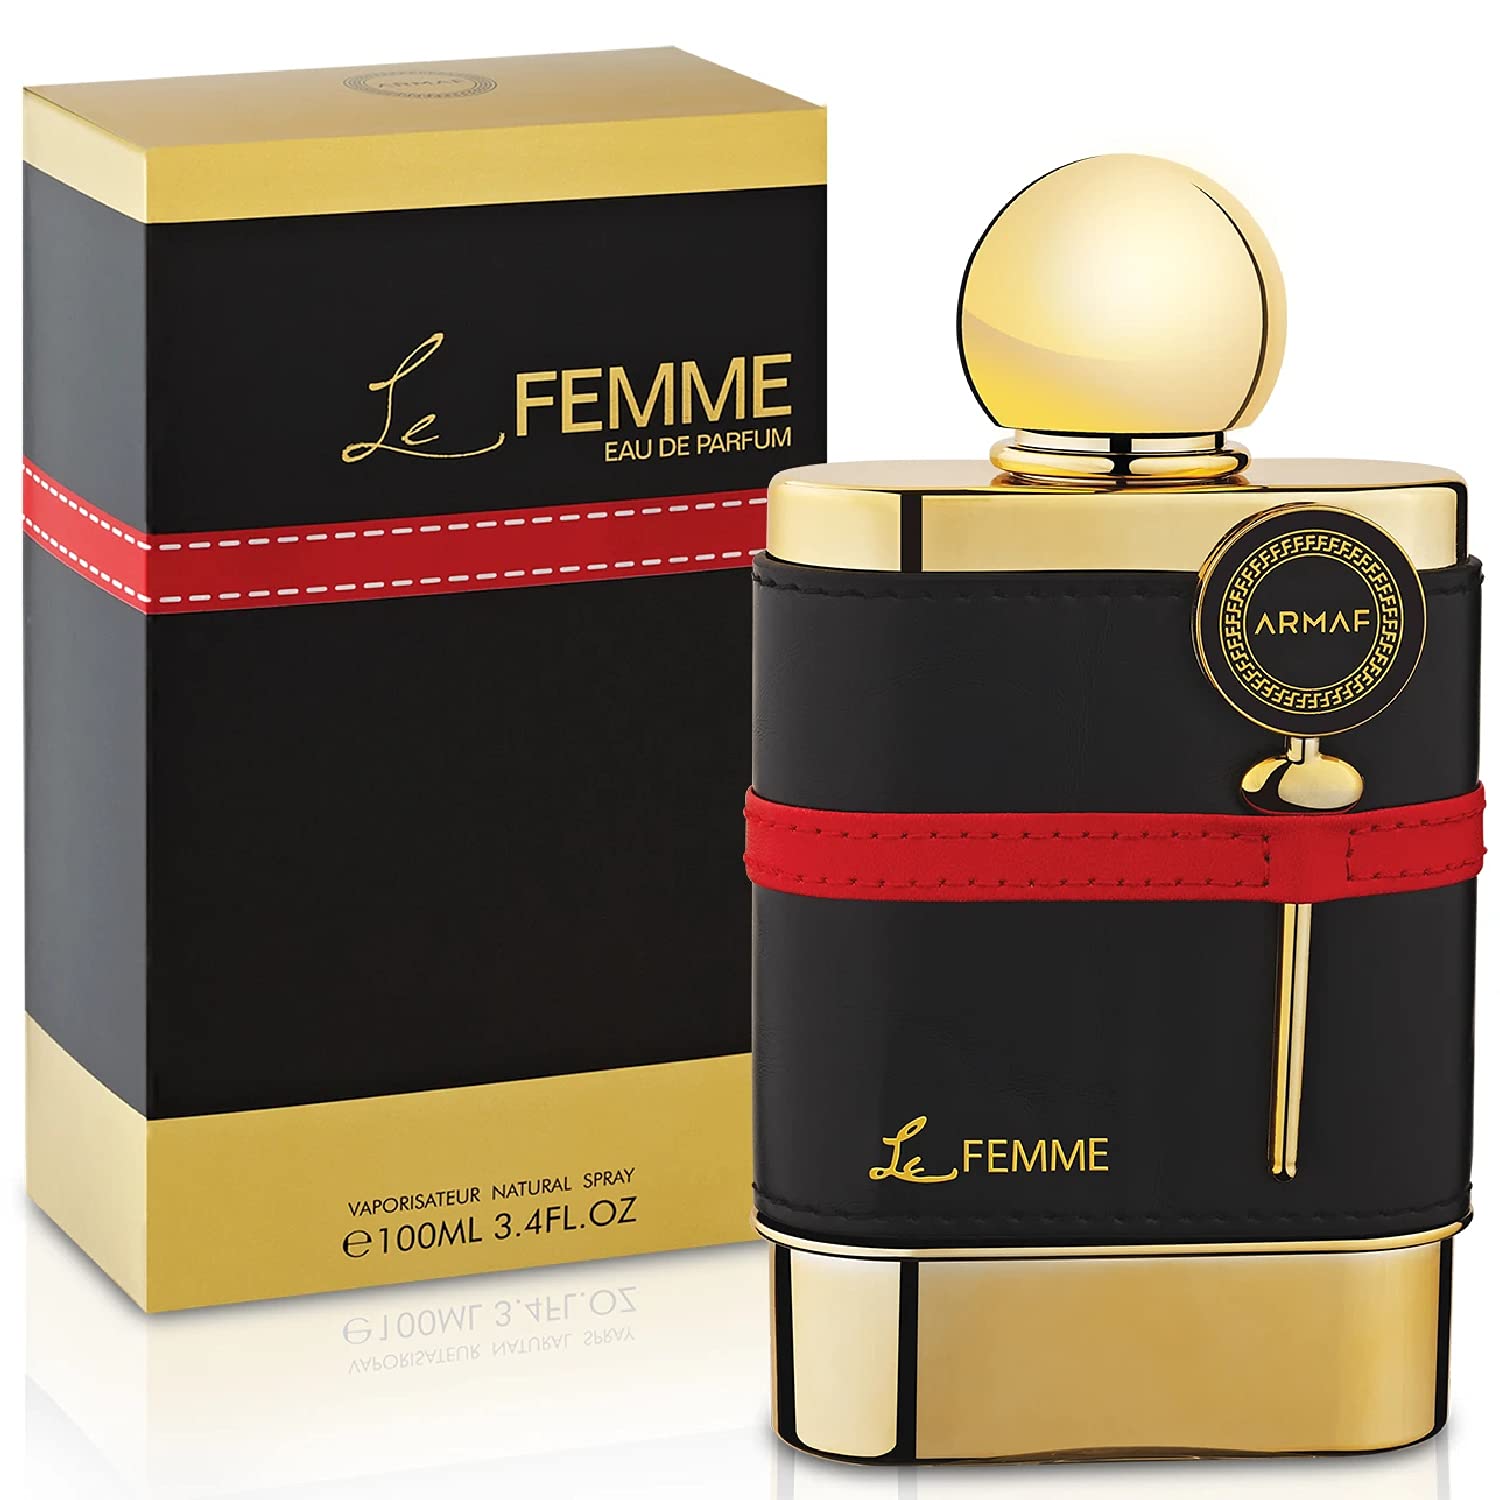 Armaf Le Femme Eau De Parfum - Perfume Planet 